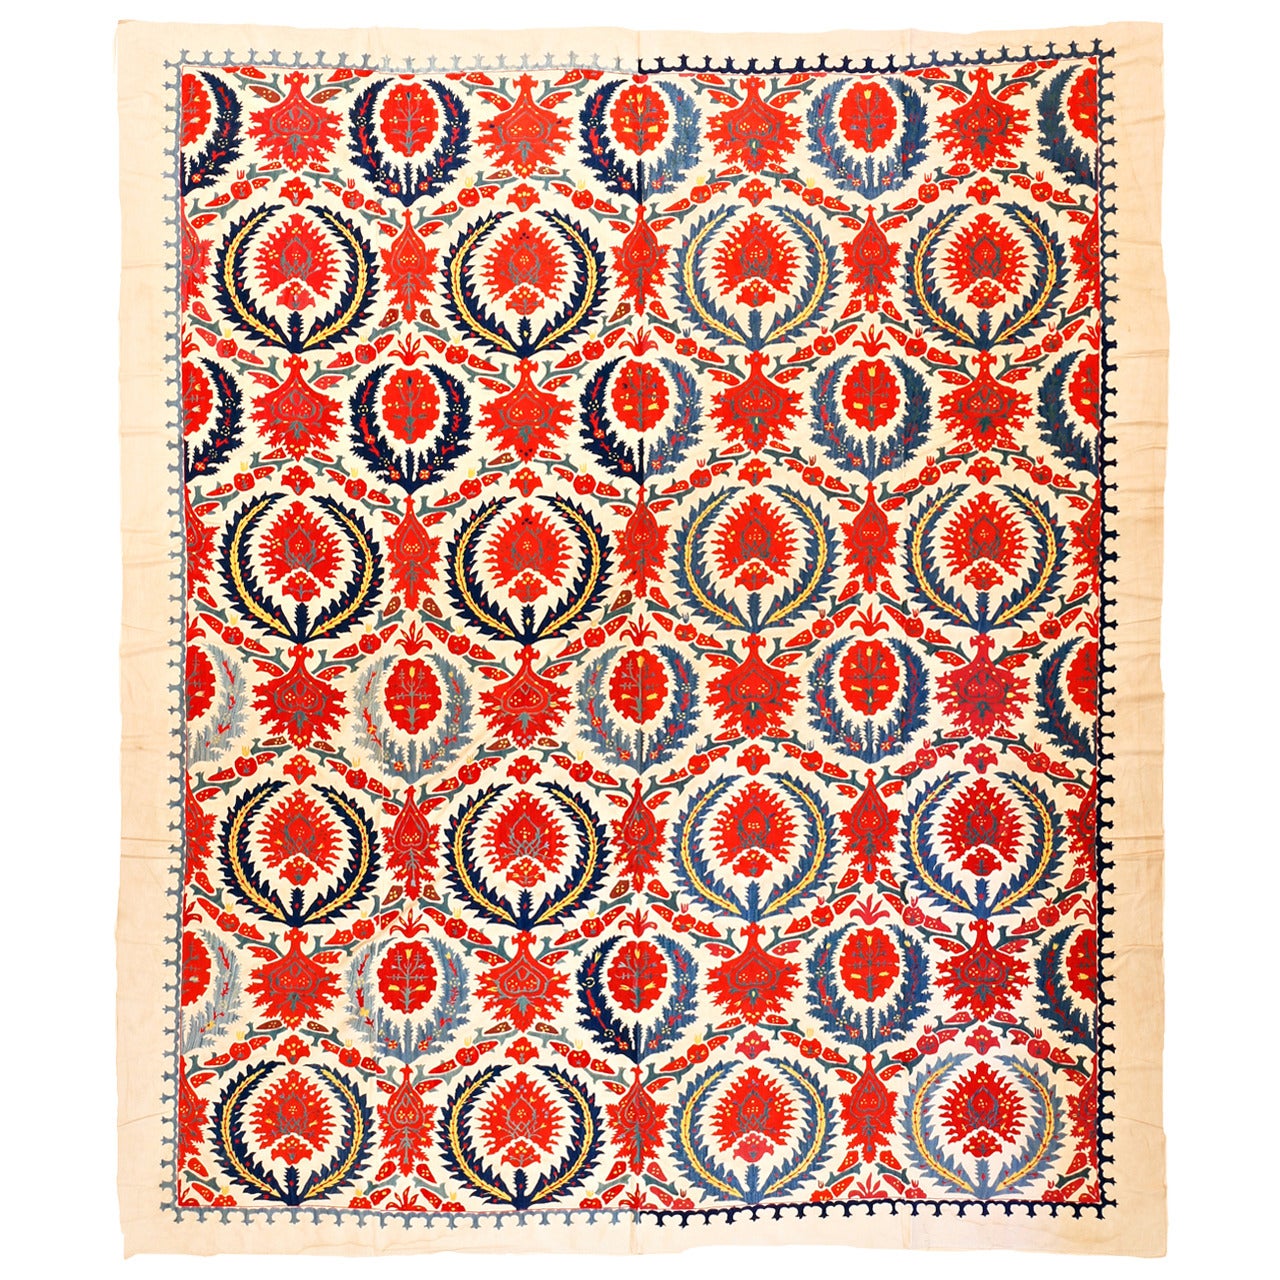 Hanging oder Spread aus besticktem Textil im Ottomane-Stil aus Seide